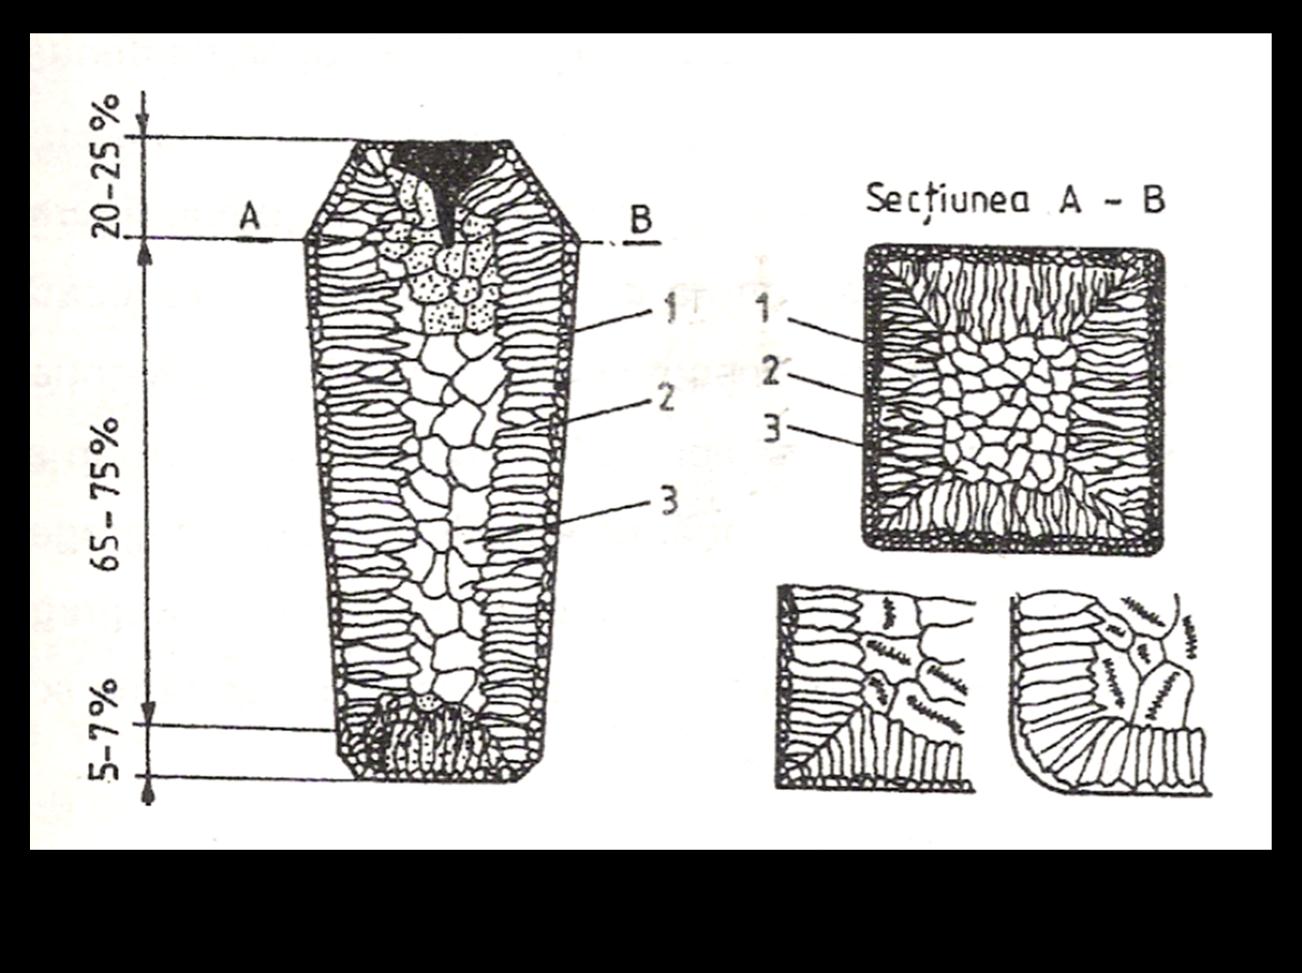 STIINTA MATERIALELOR An I M, MTR, AR Curs 4 Structura lingoului; partea superioara = maselota 1 zona grauntilor marginali; 2 zona cristalitelor columnare; 3 zona cristalitelor centrale 1 zona